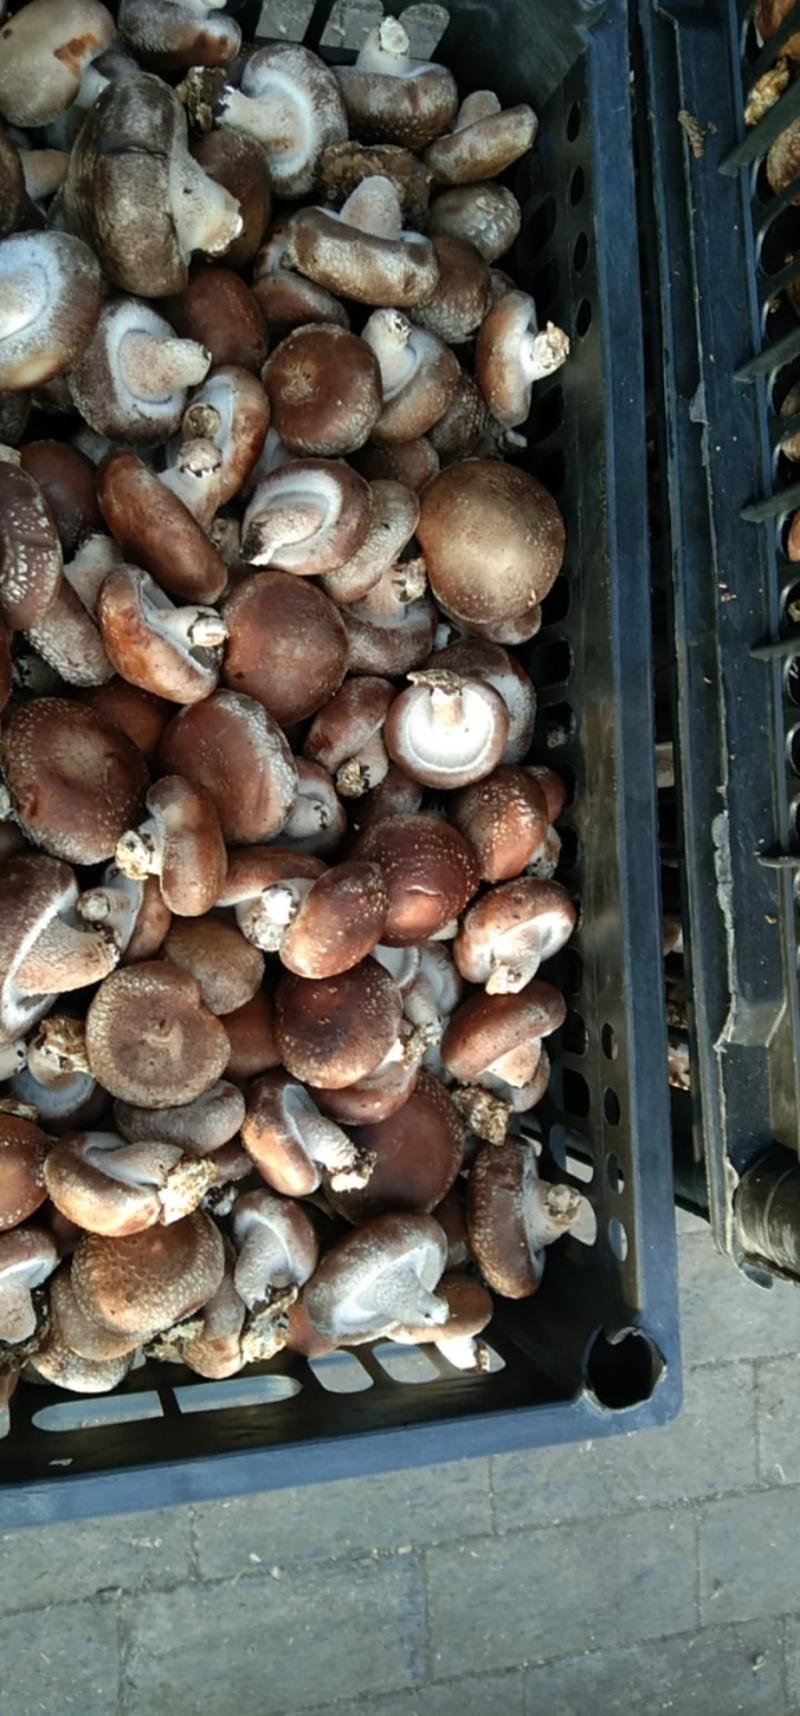 河北鲜香菇808香菇食品加企业可按工厂要求订单加工